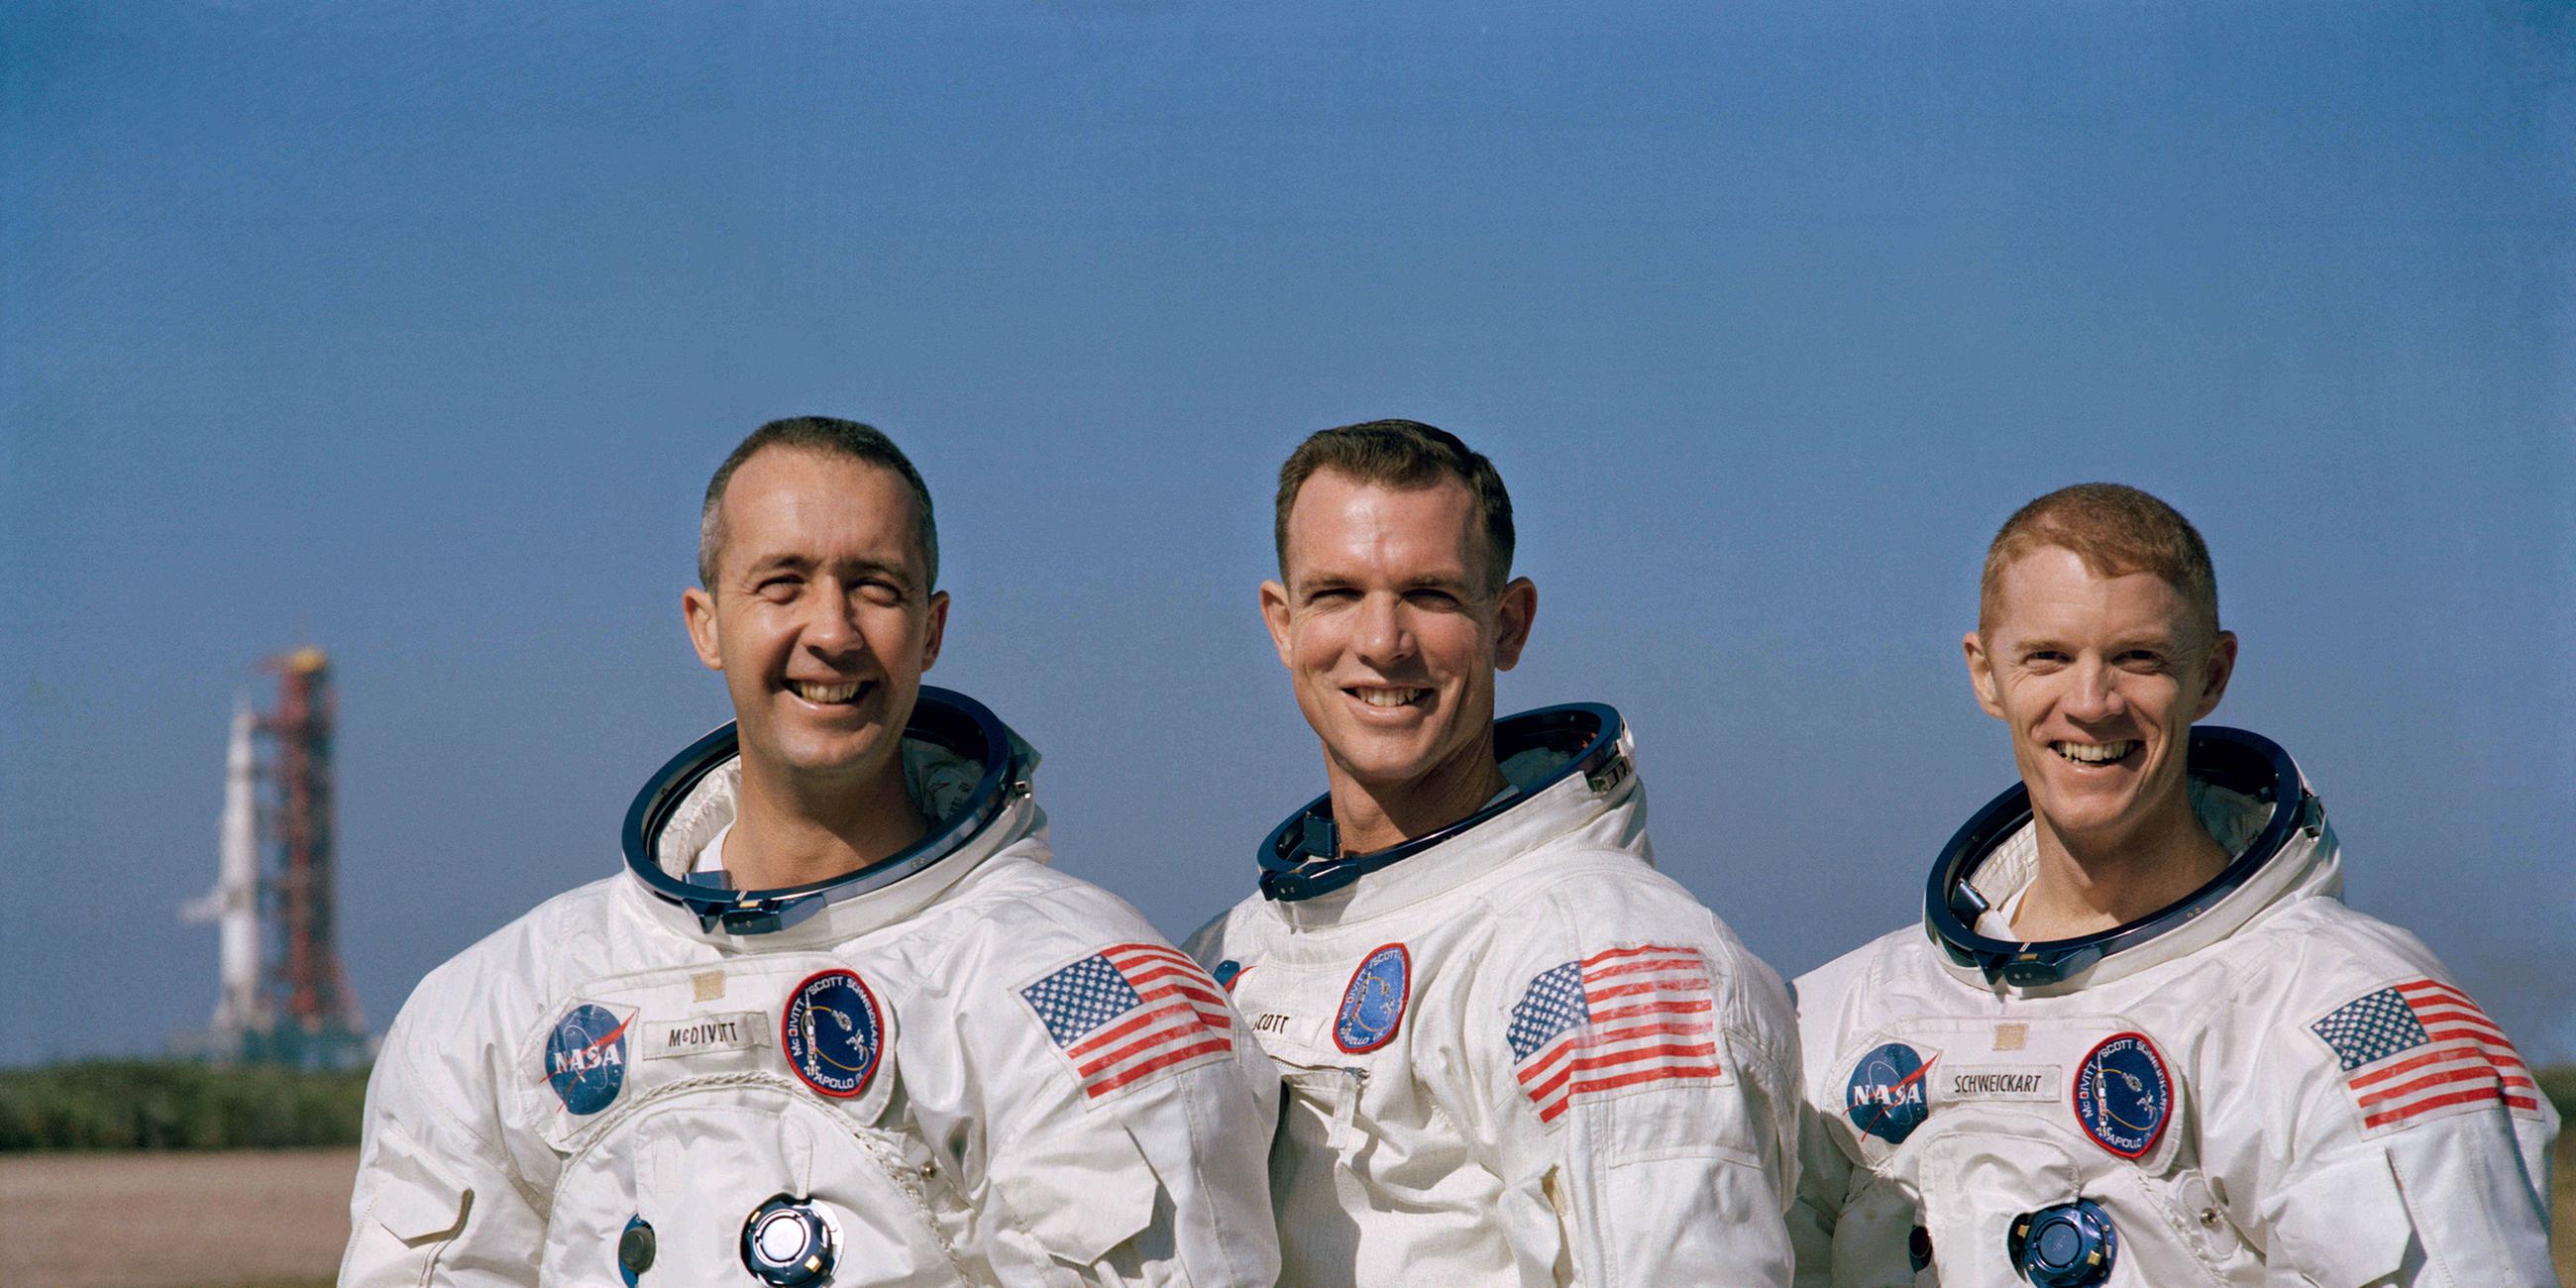 24. Dezember: "Apollo 8" umkreist den Mond. Die drei Astronauten an Bord sind die ersten Menschen, die den Himmelskörper umfliegen.